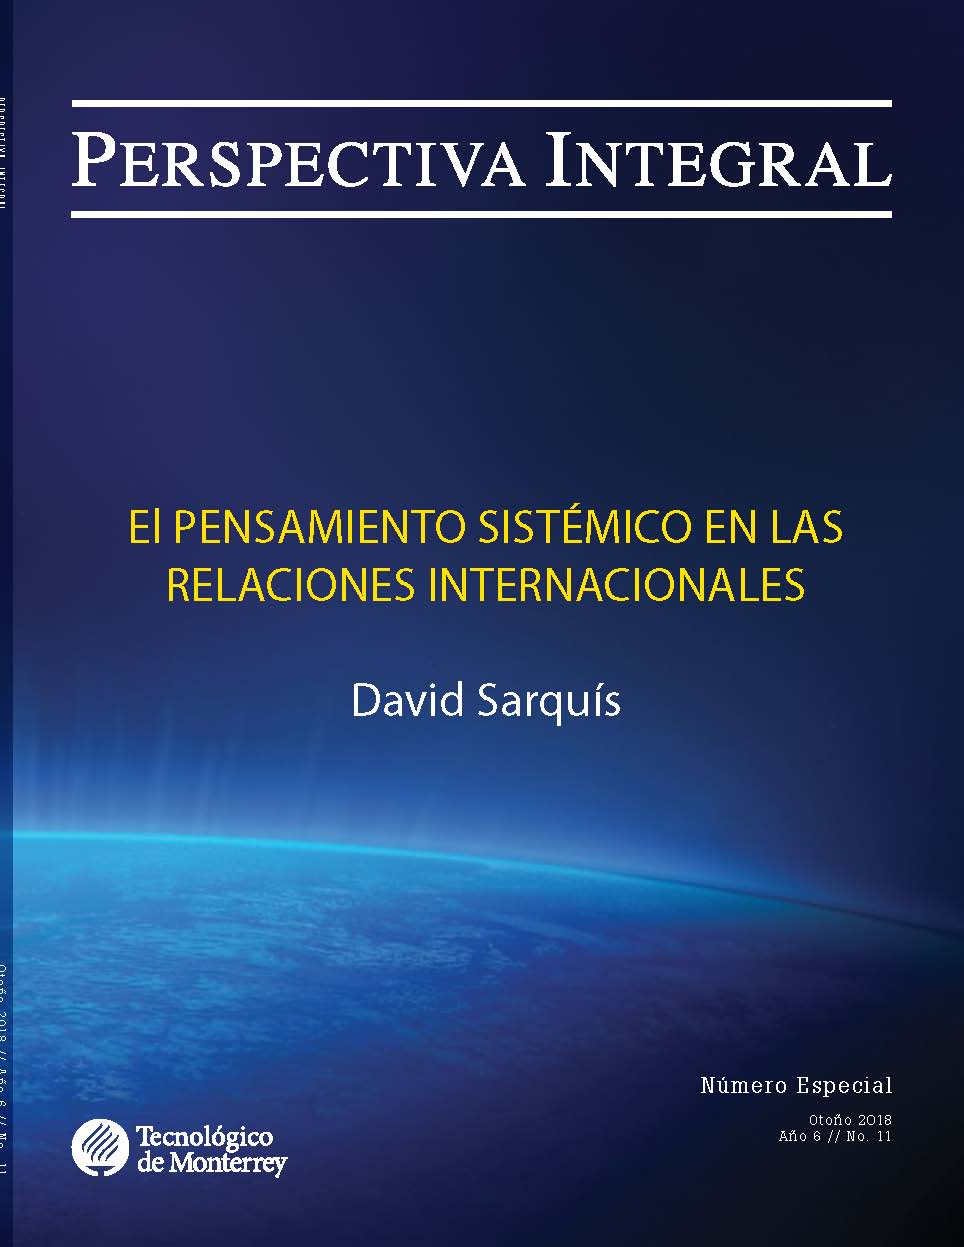 Perspectiva Integral (Revista) Book Cover